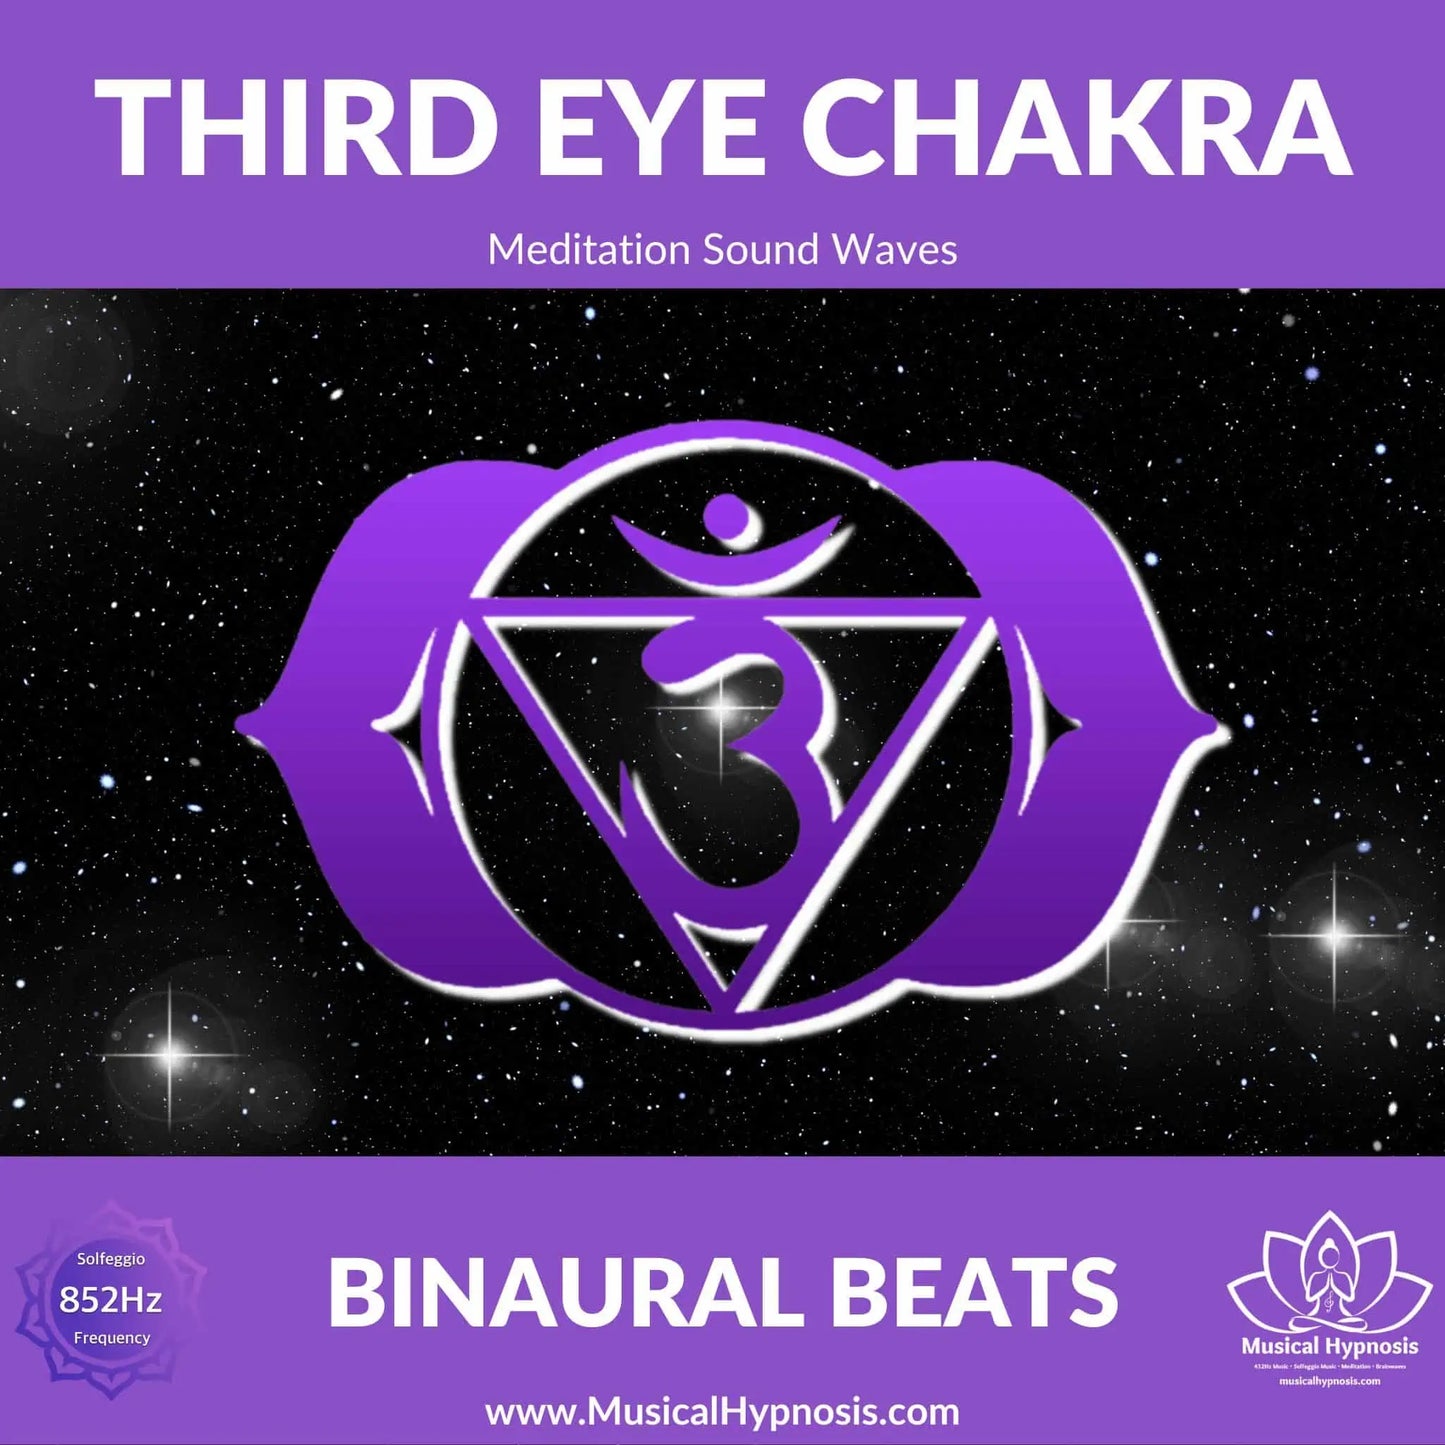 Third Eye Chakra Binaural Beats | 30 minutes